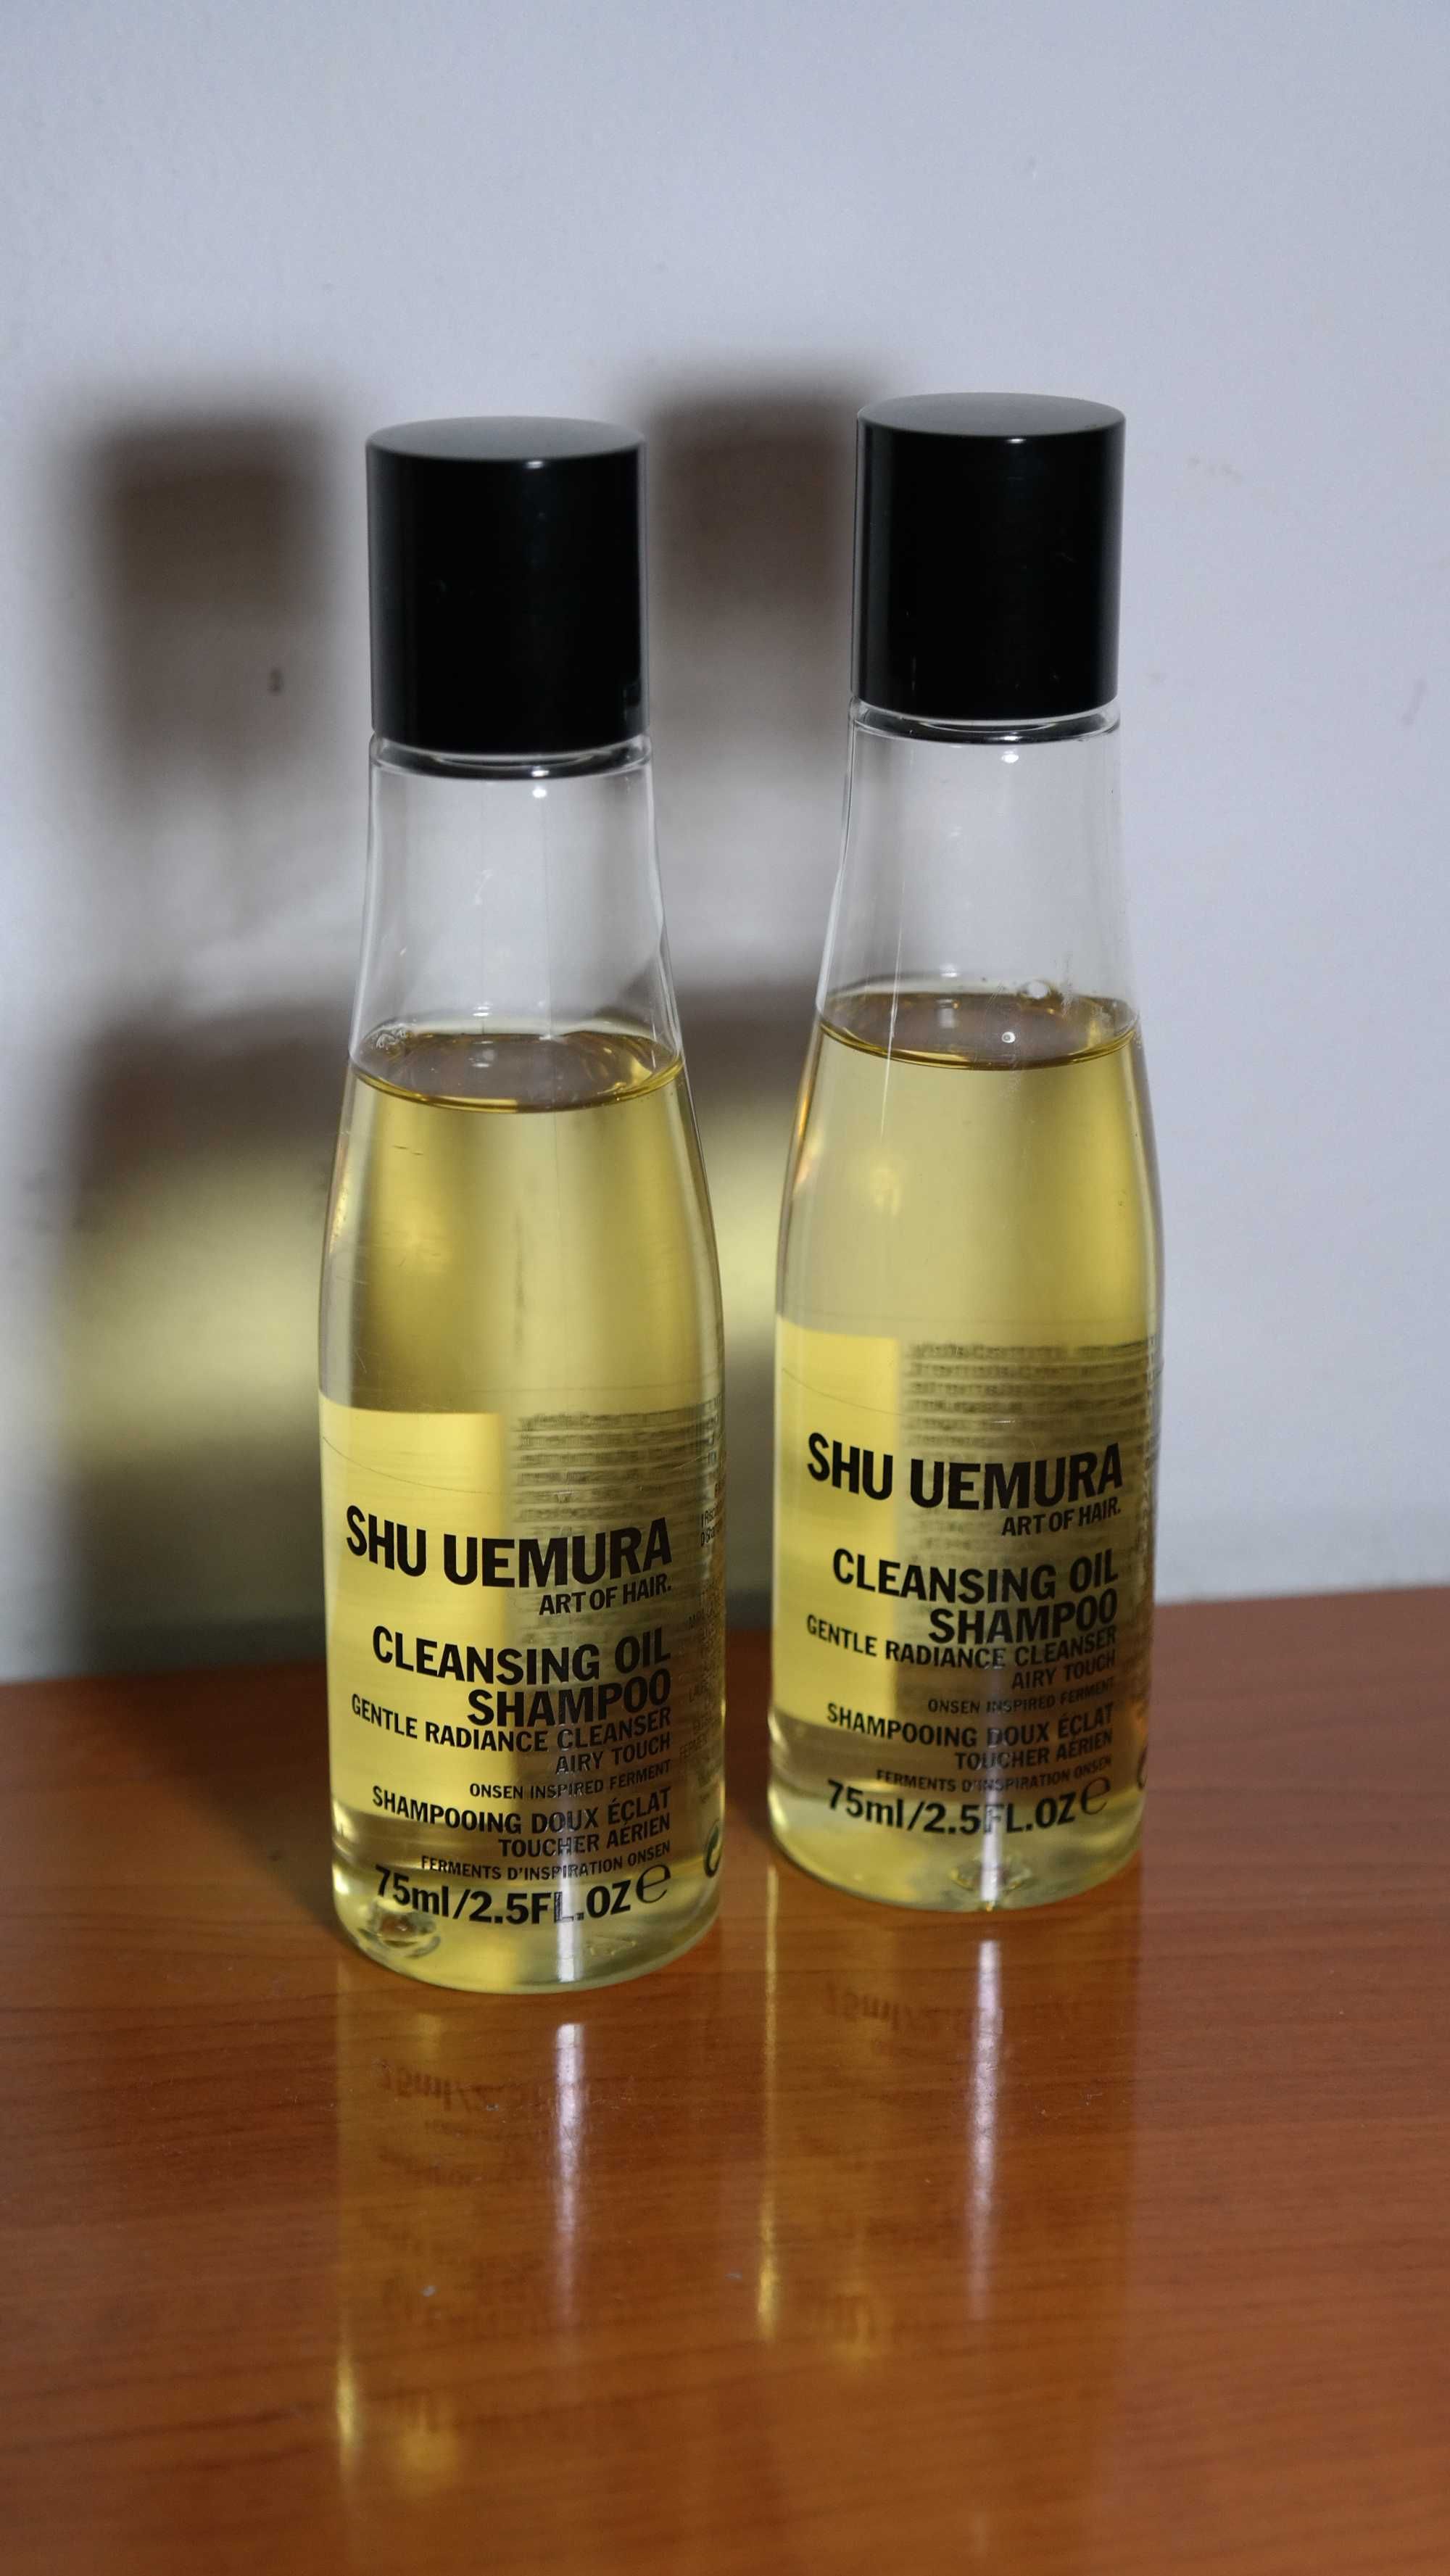 Shu Uemura sampon ulei de curatare pentru piele sensibila 75ml